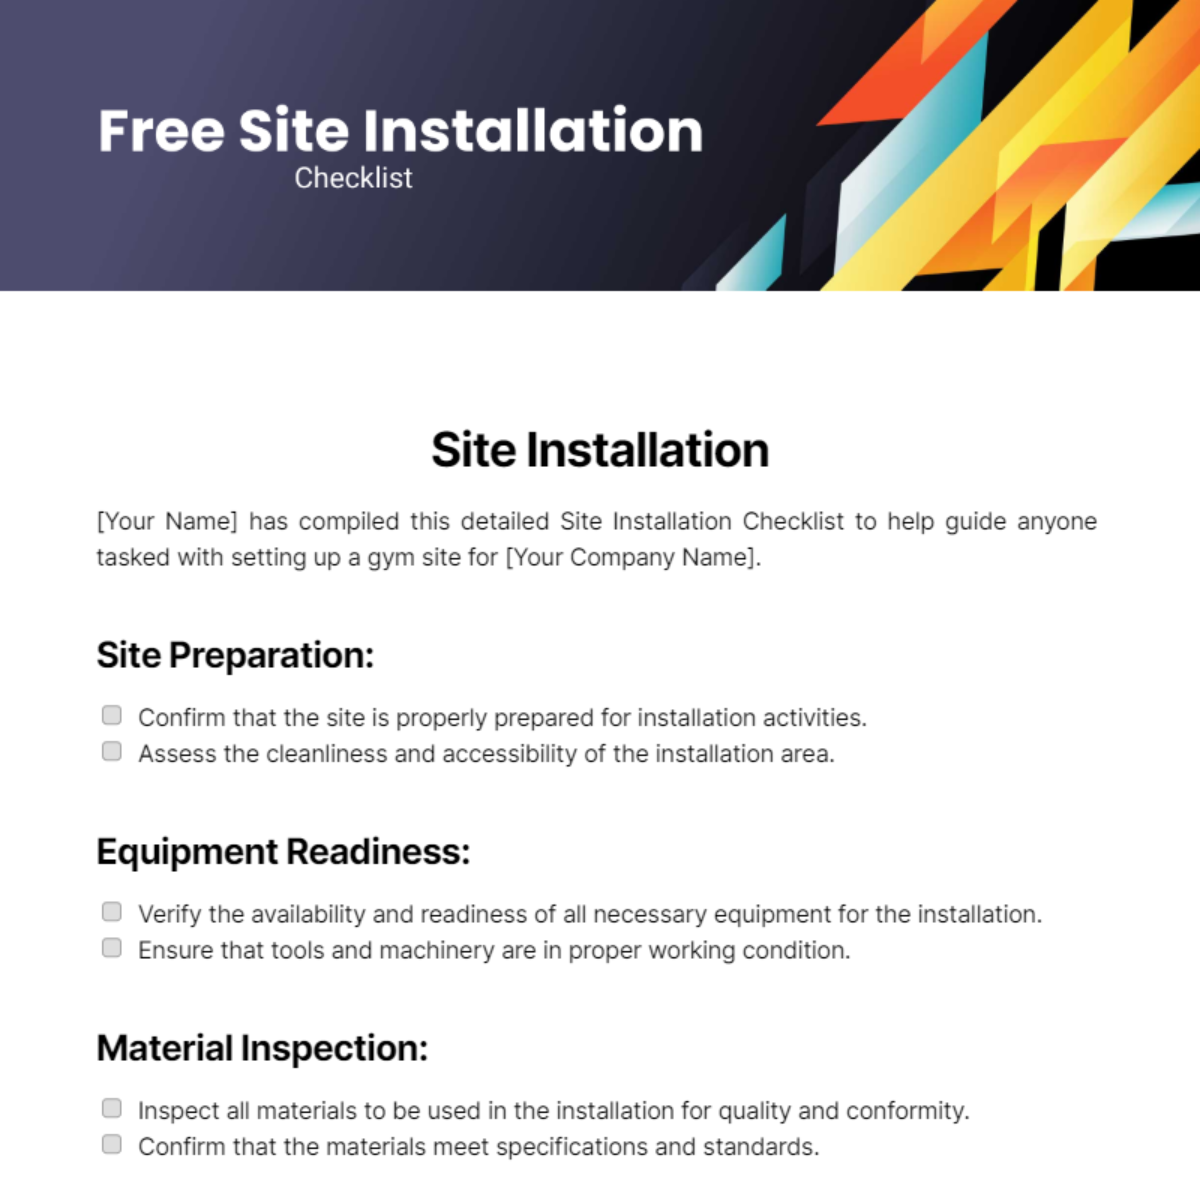 Site Installation Checklist Template